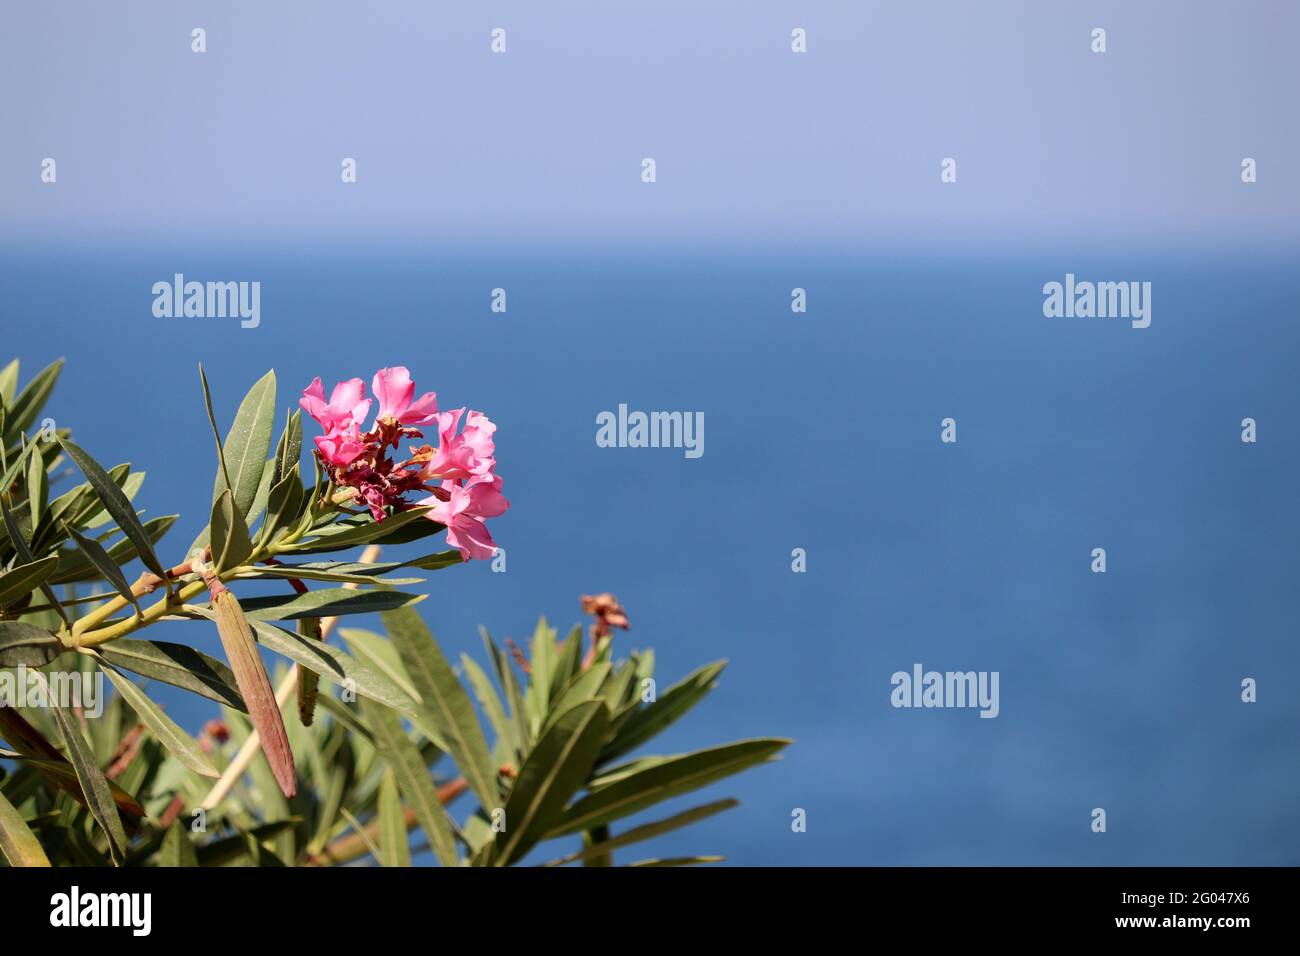 Vacanza al mare, fiori di oleandro su sfondo blu d'acqua. Tempo libero e relax su una spiaggia paradisiaca Foto Stock